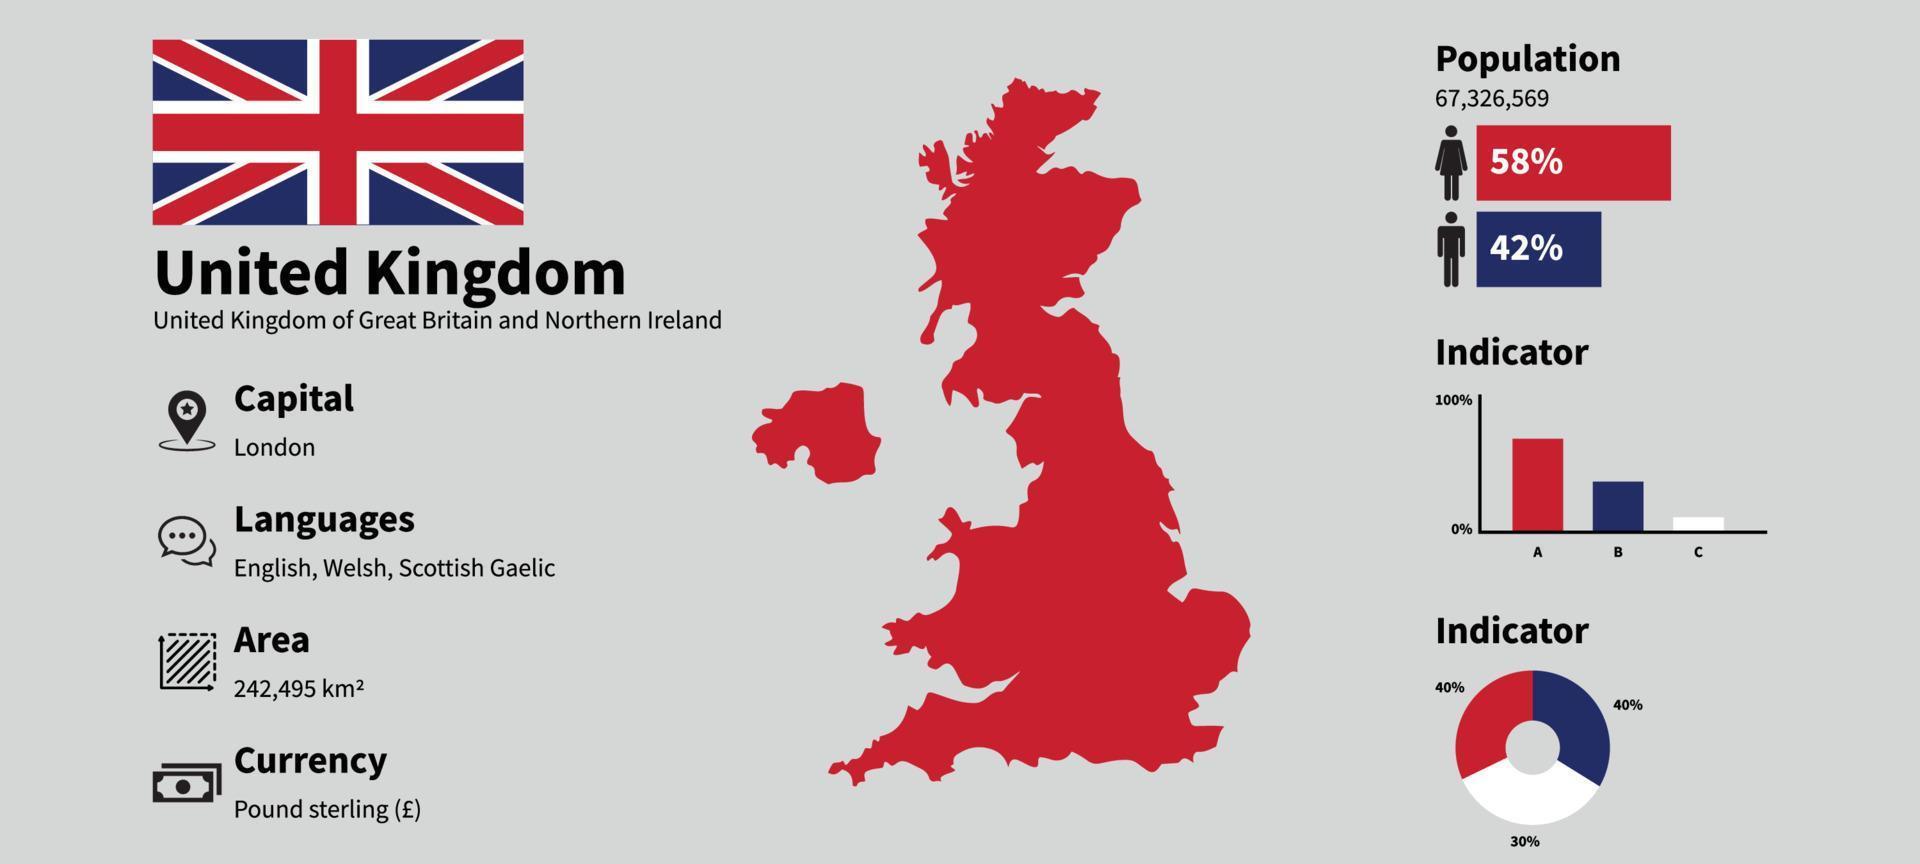 Verenigde koninkrijk infographic vector illustratie met accuraat statistisch gegevens. uk land informatie kaart bord en uk vlag